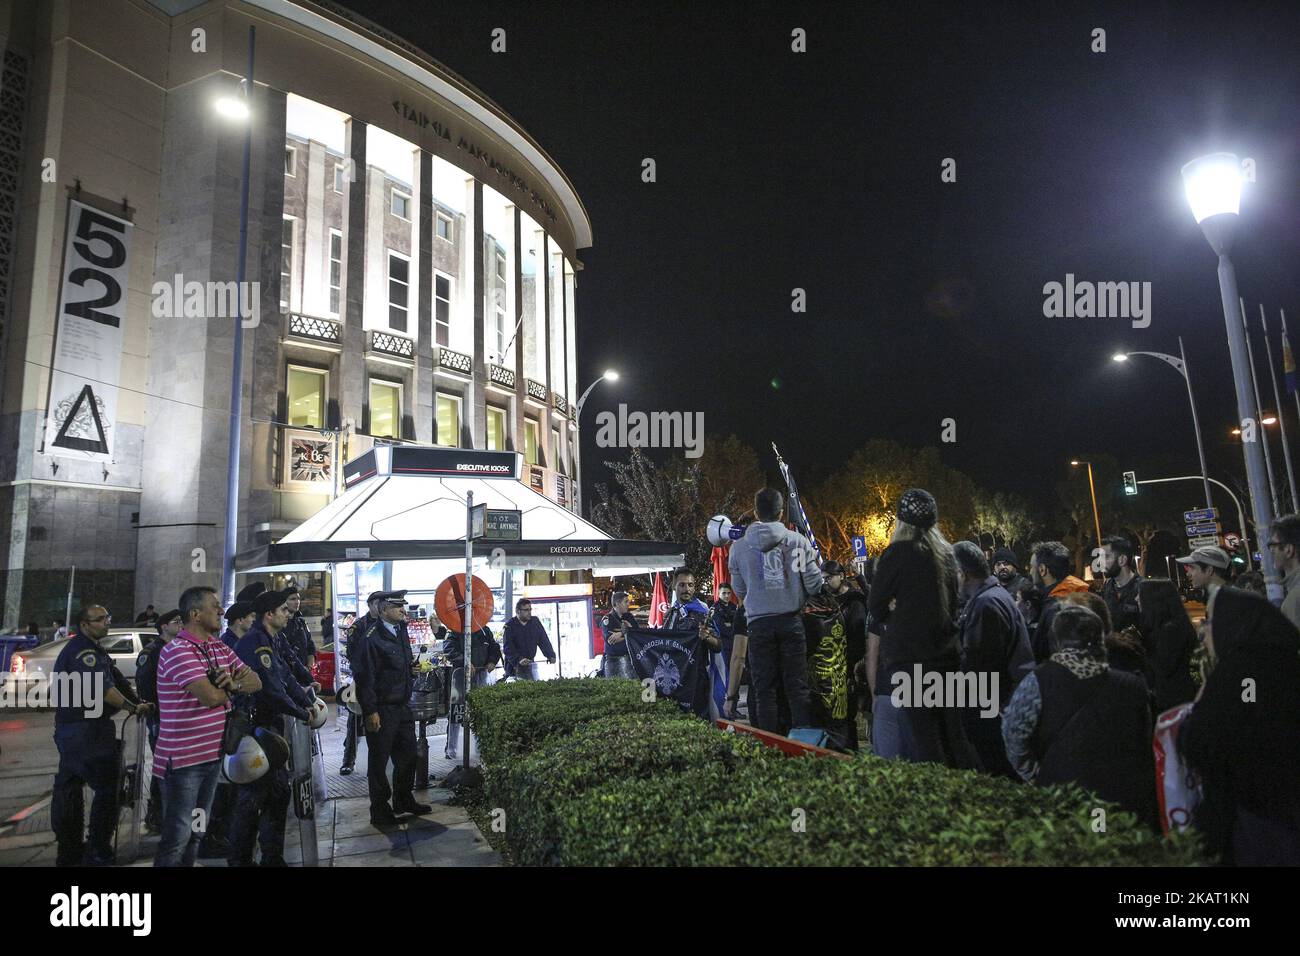 Ultra-religiöse christliche Fanatiker protestieren am 20. Oktober 2017 gegen Pessoas Theaterstück „die Stunde des Teufels“ in Thessaloniki, Griechenland. Es war der dritte Tag in Folge, an dem die ultra-orthodoxen Gruppenproteste vor dem Aristoteleion-Theater gegen die Aufführung des Stücks „die Stunde des Teufels“ des portugiesischen Autors Fernando Pessoa protestierten. Zuvor gab es einige Kämpfe während des Protestes und die Polizeipräsenz war stark. Sie skandierten religiöse und nationale Hymnen. Unter ihnen war „Vater“ Kleomenis, ein selbsternannter „Vater“, der das Stück „Blasphemie“ nannte. Kleomenis gewann Werbung ein paar Monate Stockfoto